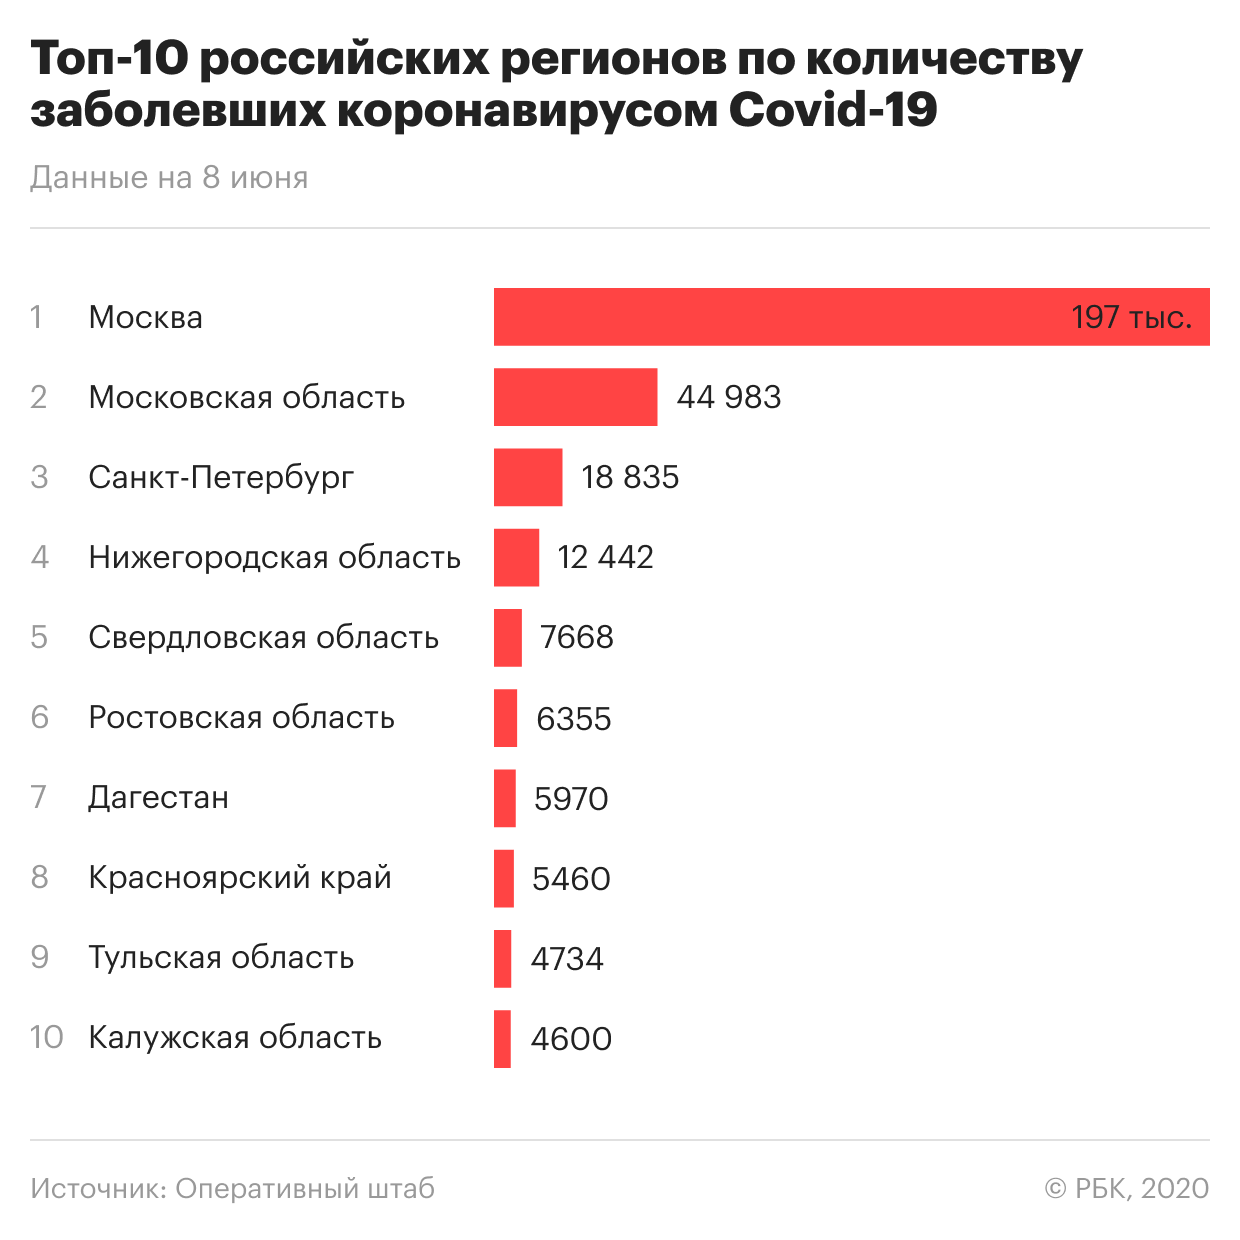 Сколько заболевших в России. Сколько человек заболело коронавиру. Количество заболевших. Статистика пандемии в России. Какие города заболевшие